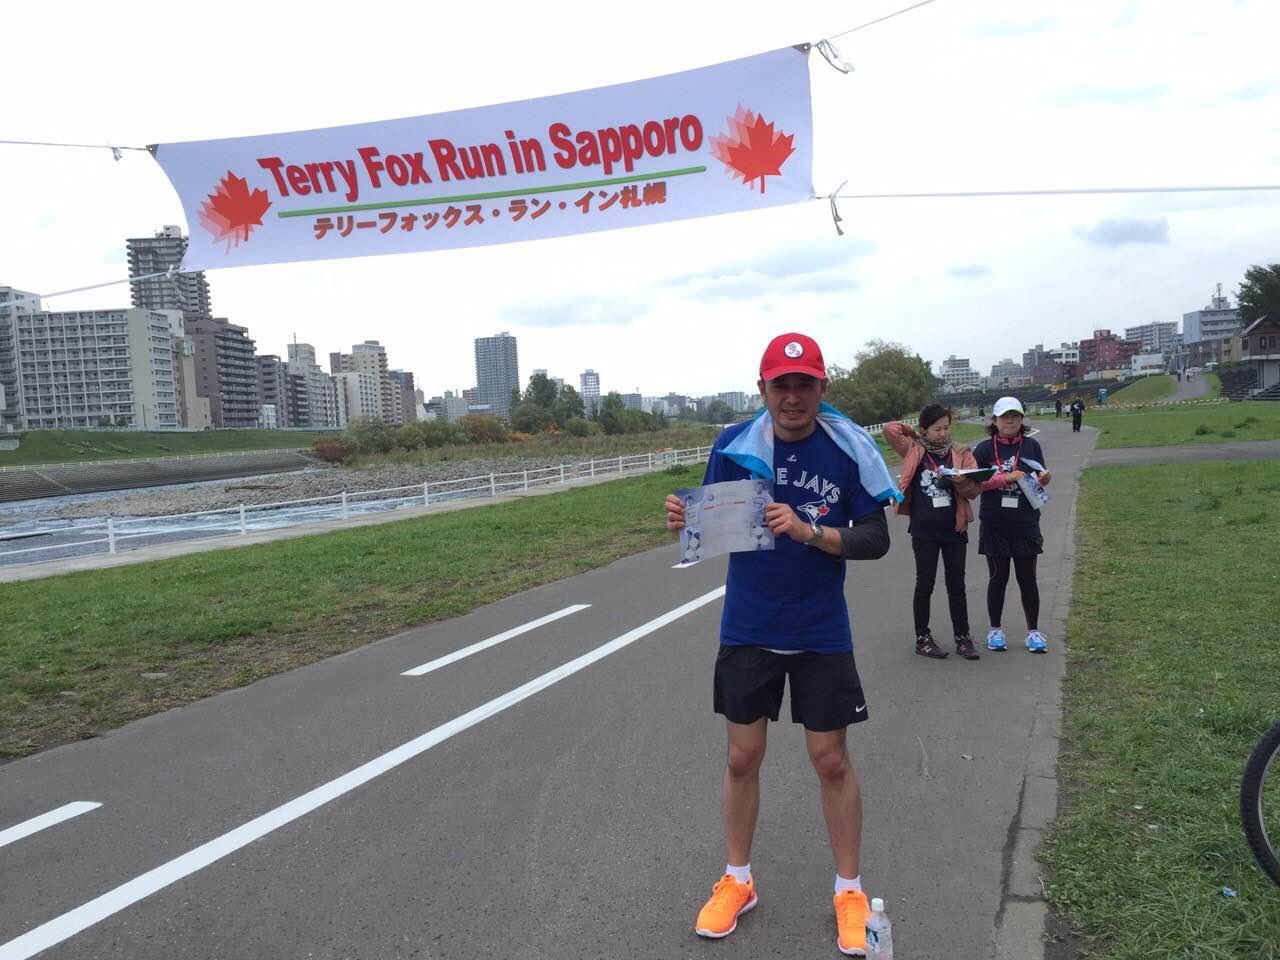 札幌でカナダの英雄のチャリティマラソン行われます 北海道留学センターブログ